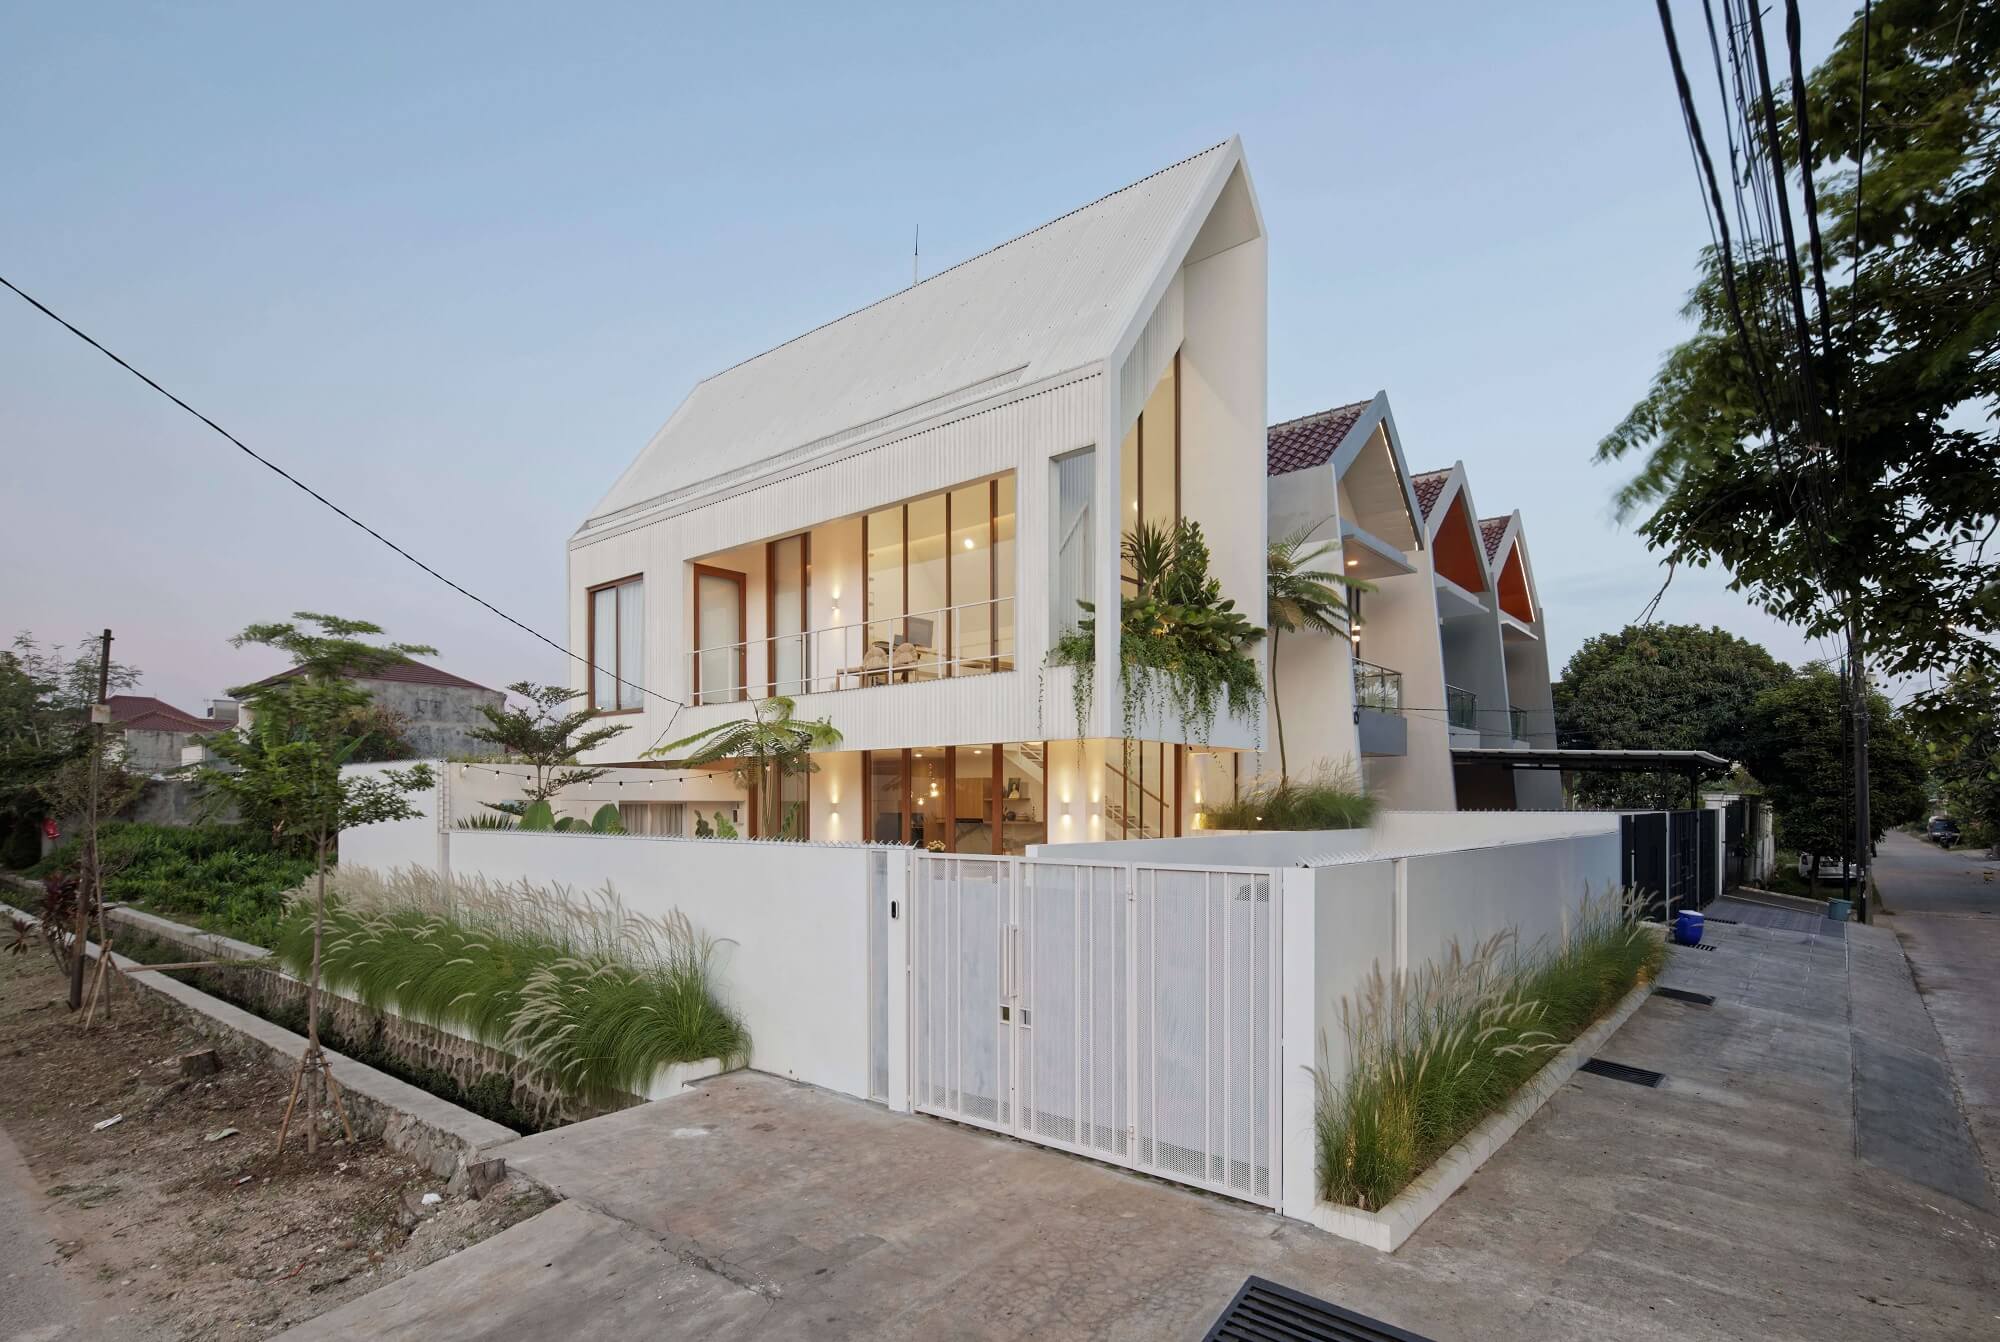 NAGATO HOUSE | Rasa Architektura